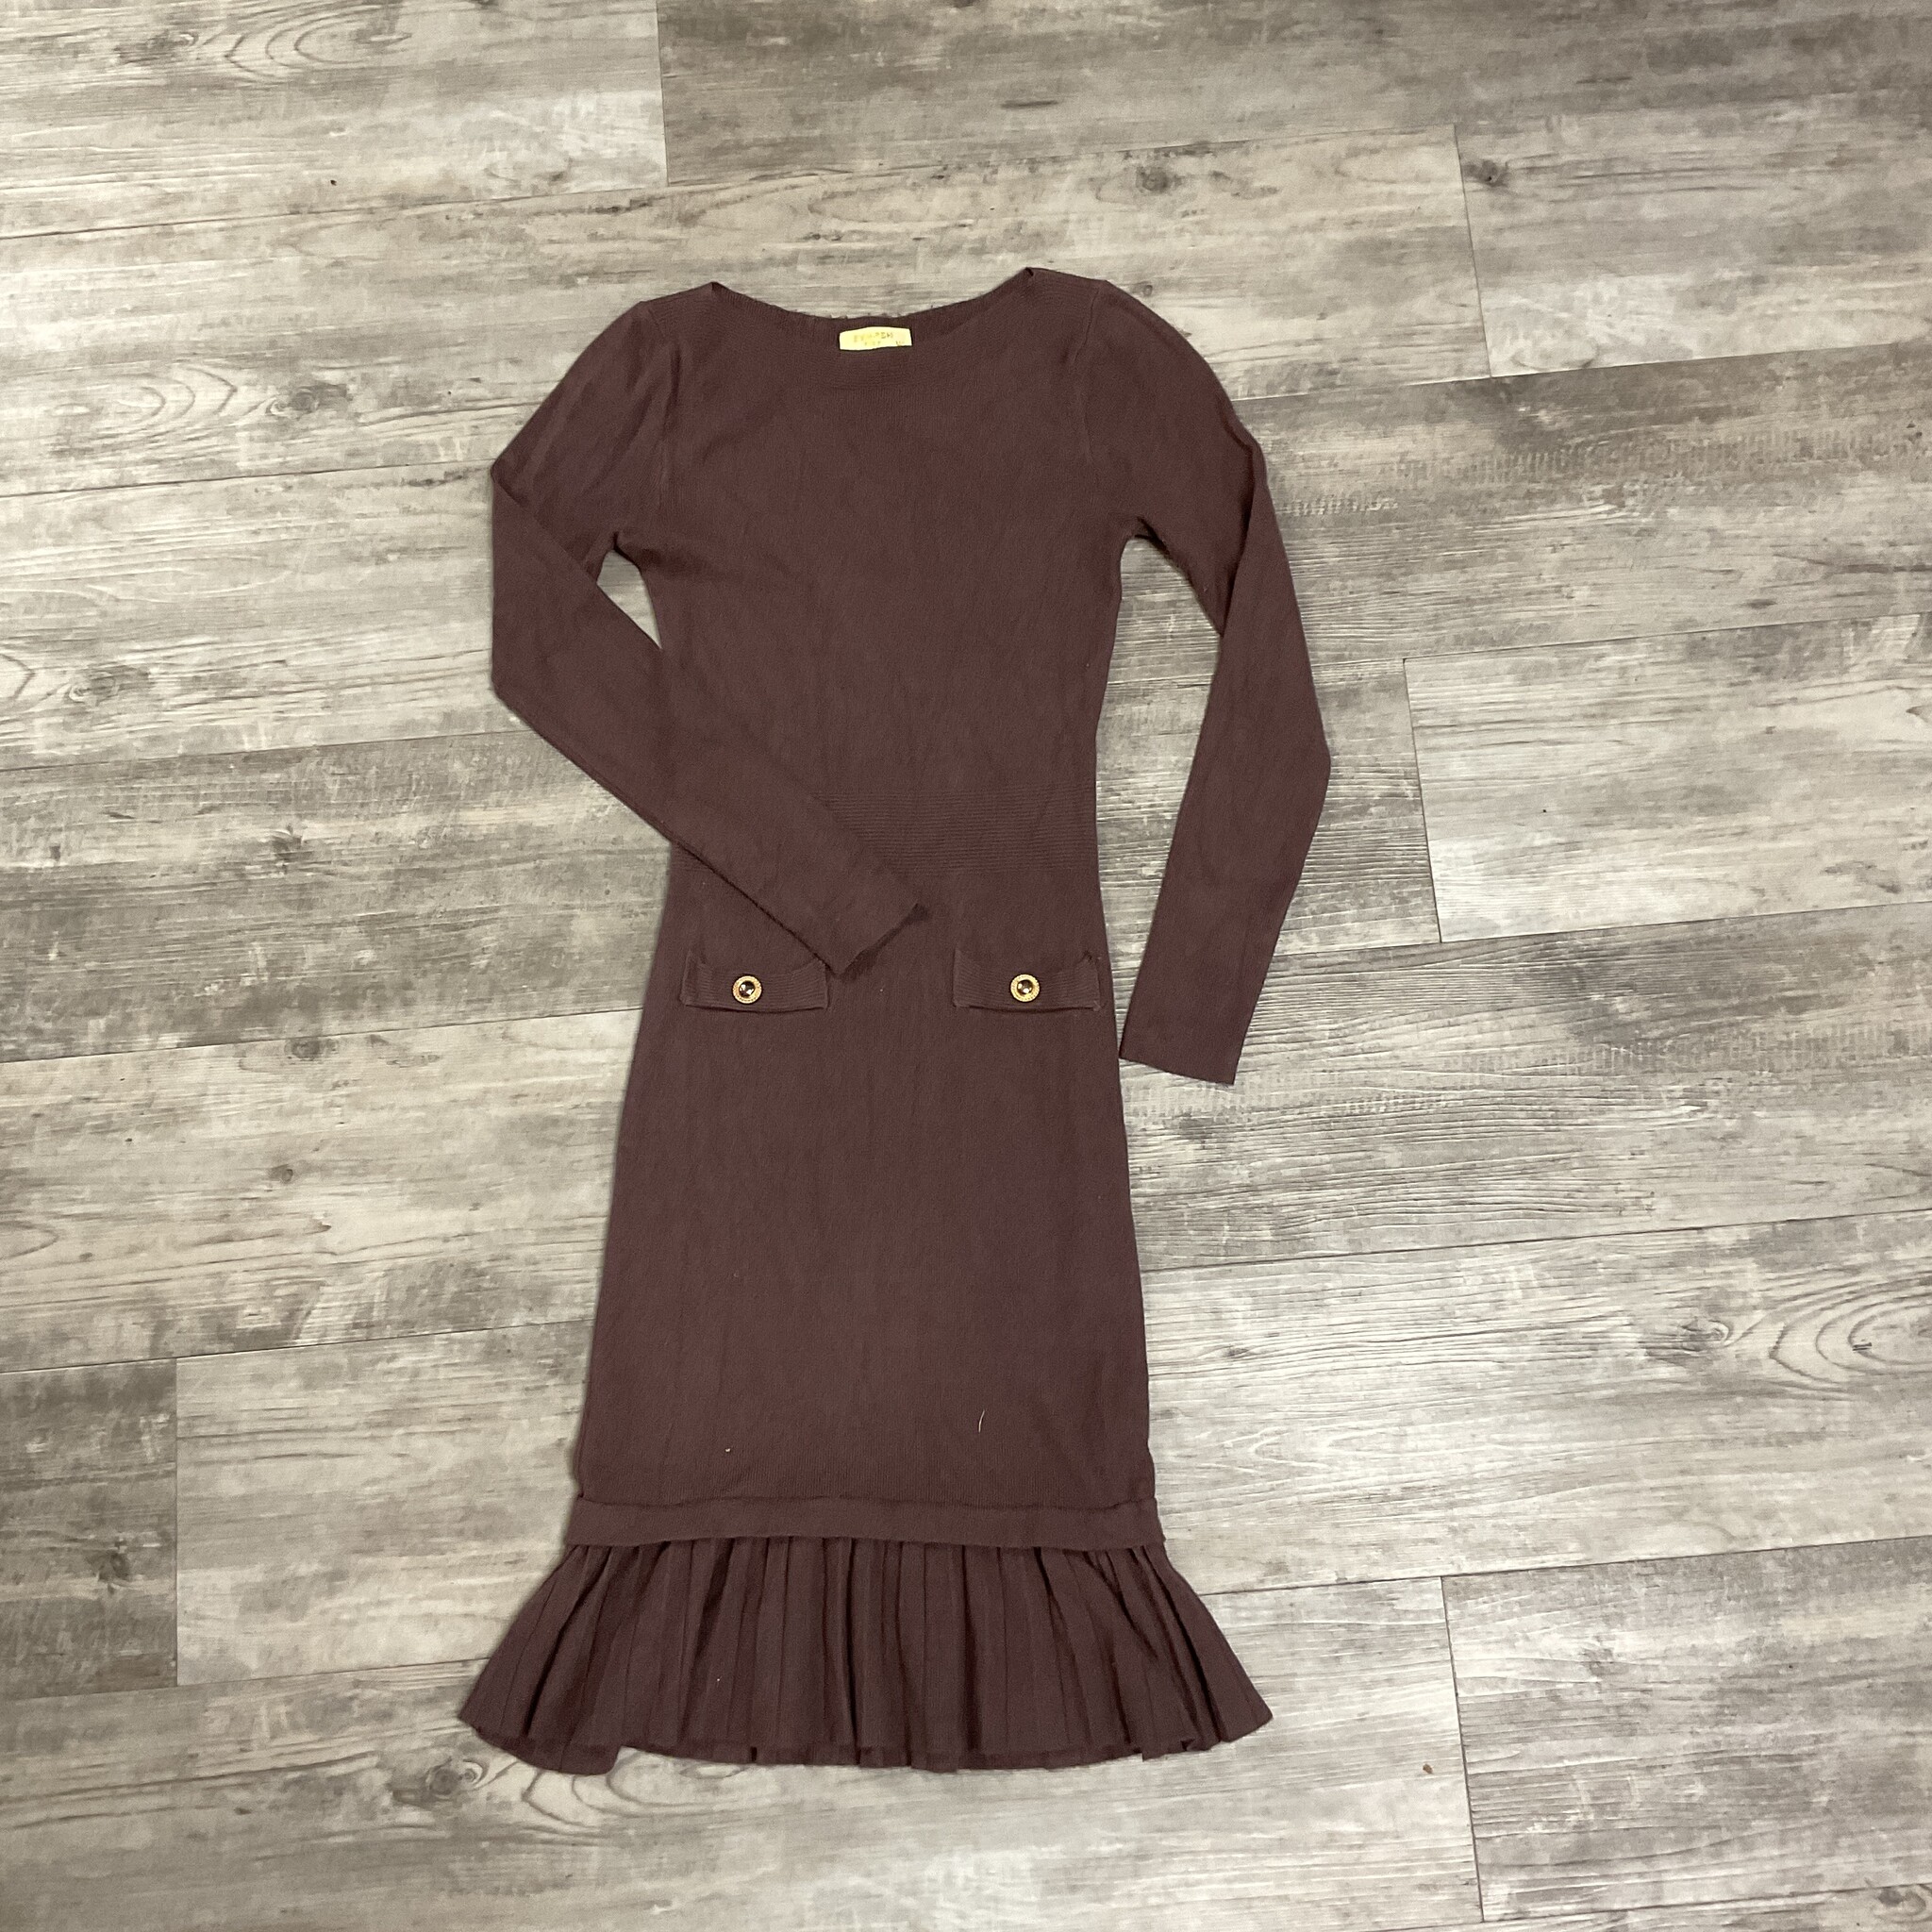 Deep Mauve Knit Dress with Ruffle - Size M